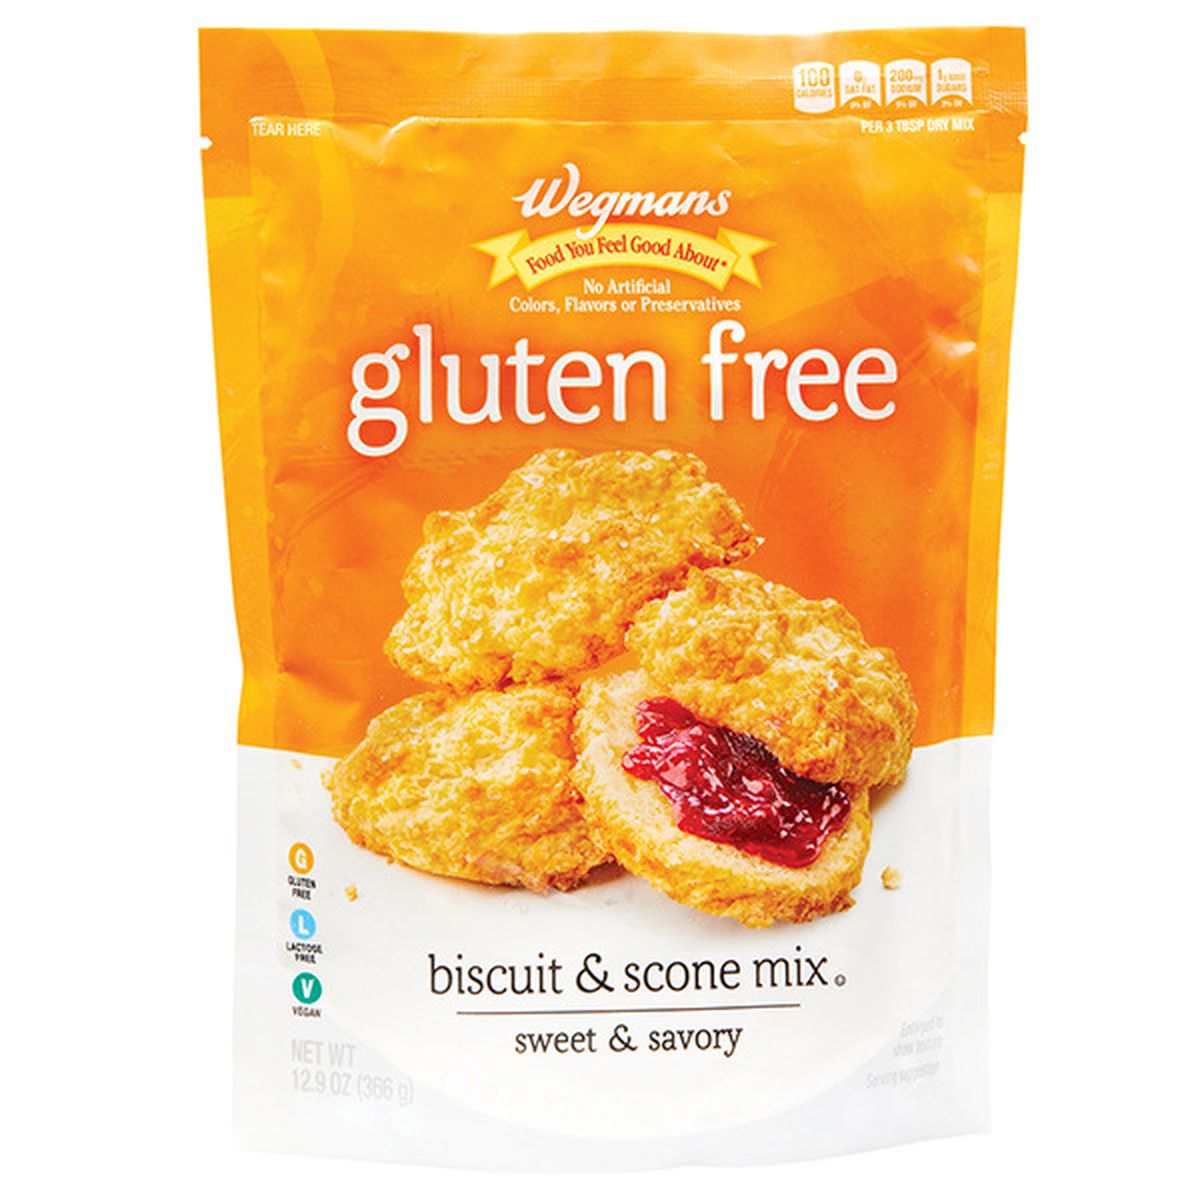 Calories in Wegmans Gluten Free Biscuit & Scone Mix